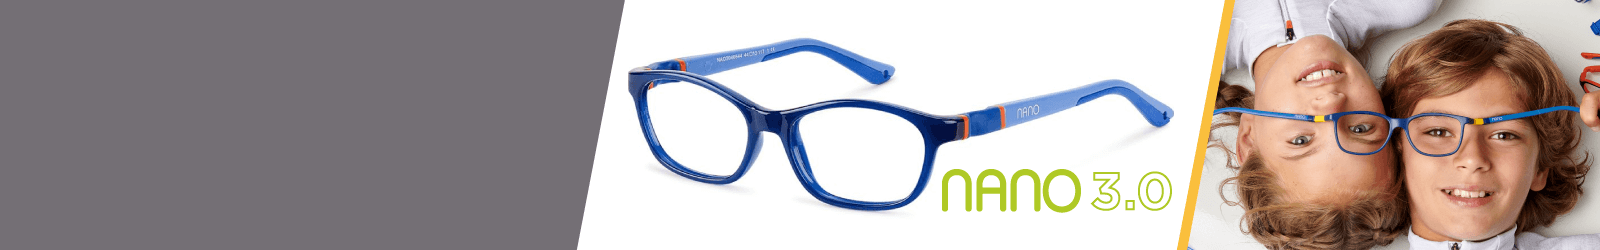 Fuchsia Nano 3.0 Indestructible Kids Sunglasses   for Girls